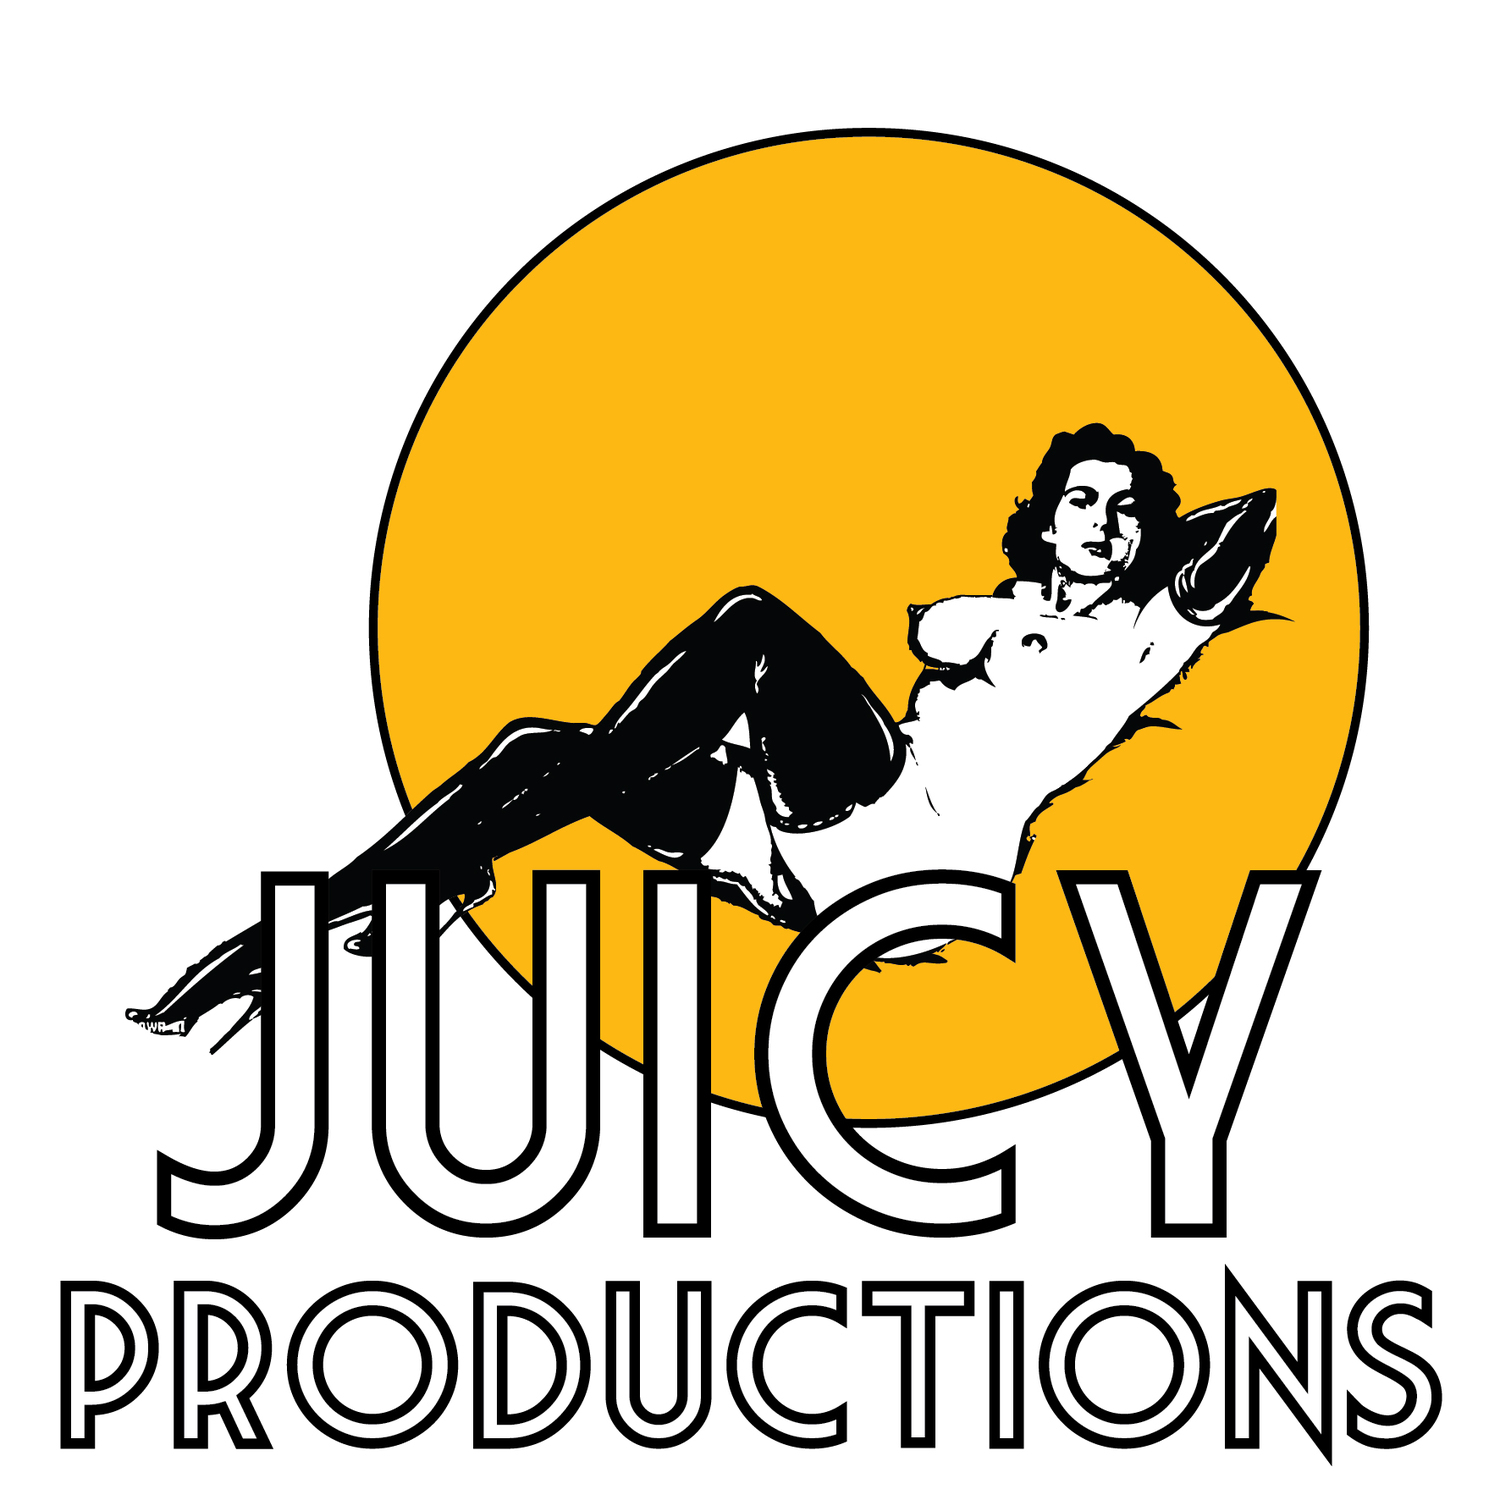 Juicy Productions Ltd